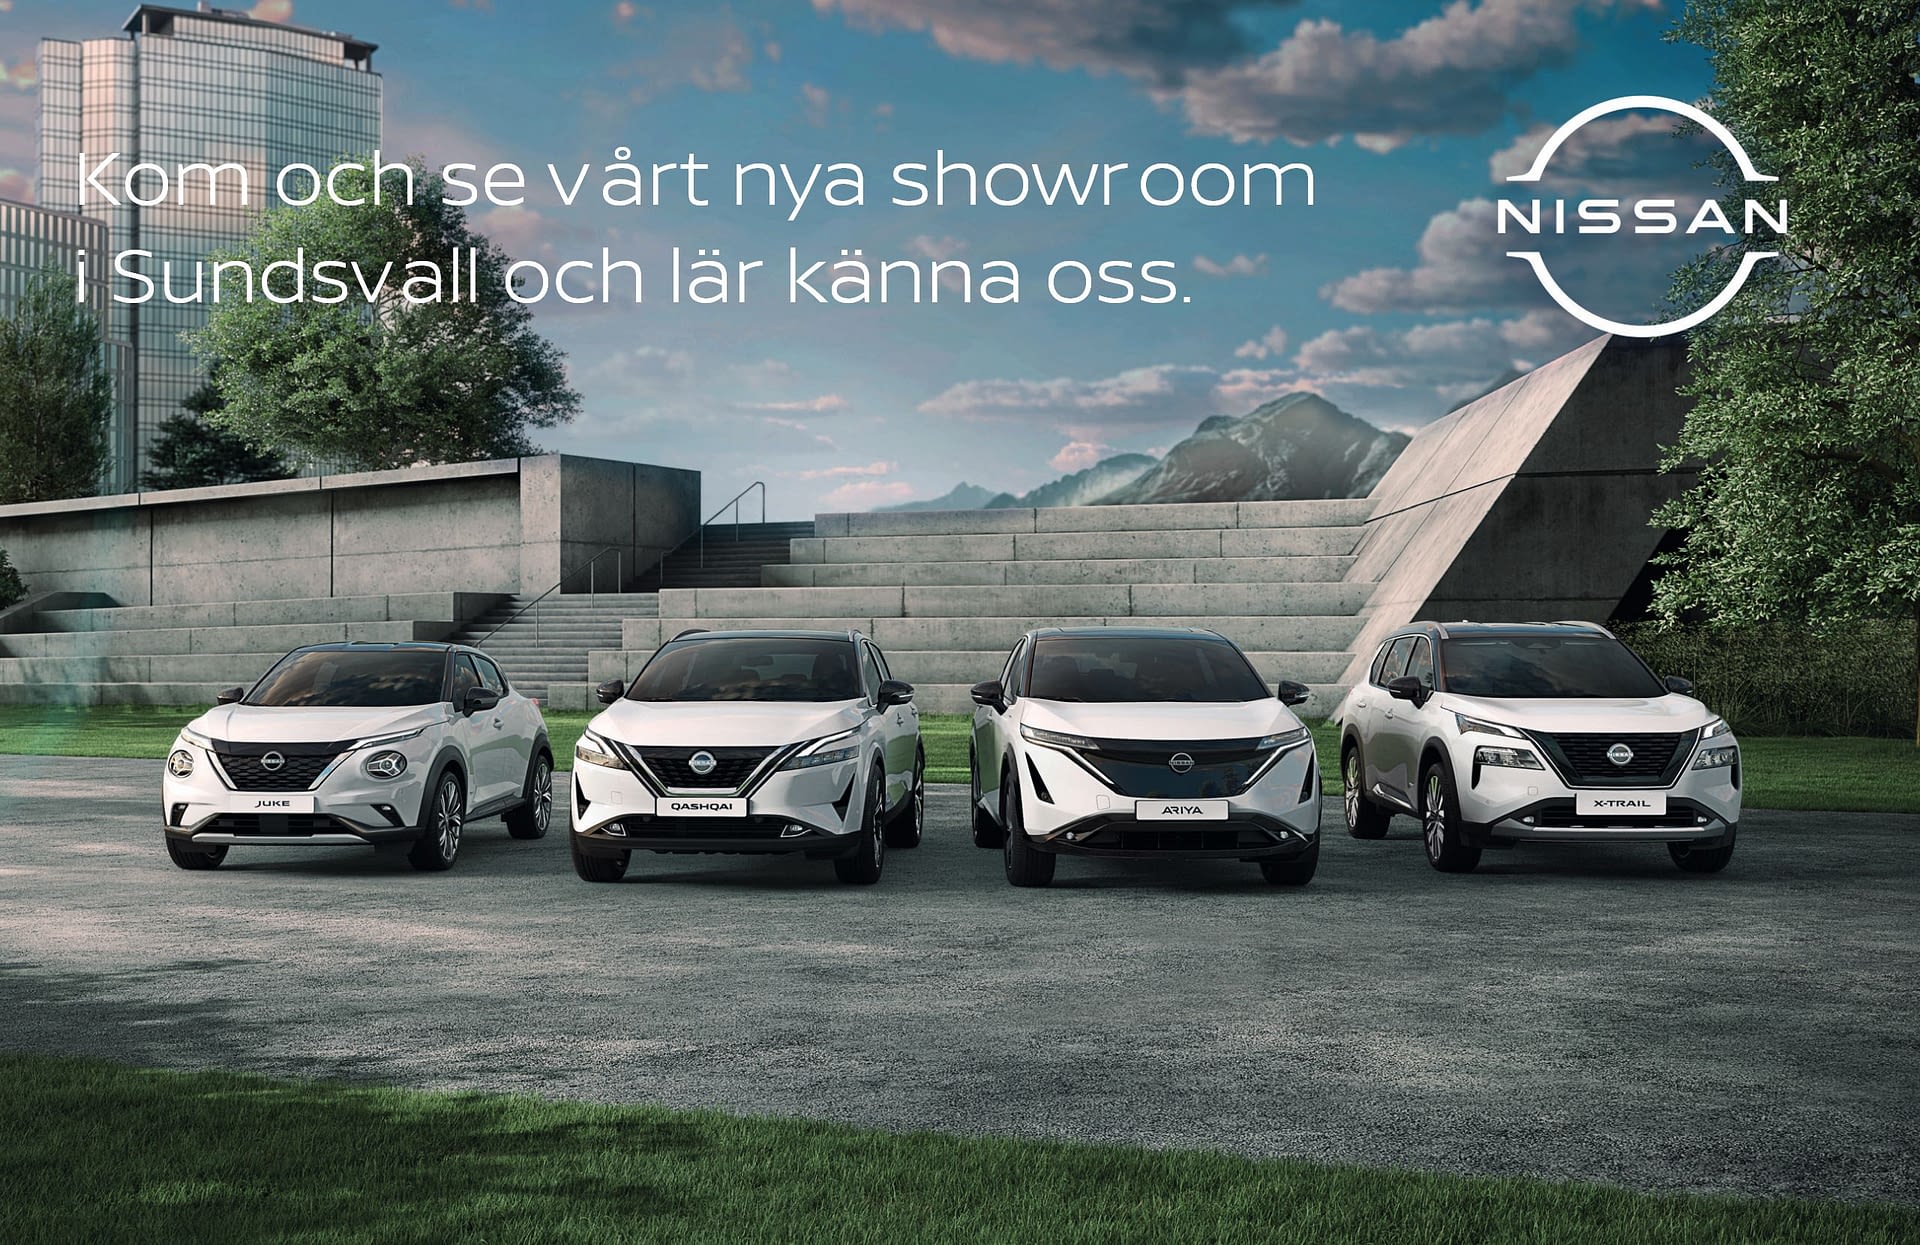 Nissan Sundsvall Invigning Öppet hus - Landrins Bil